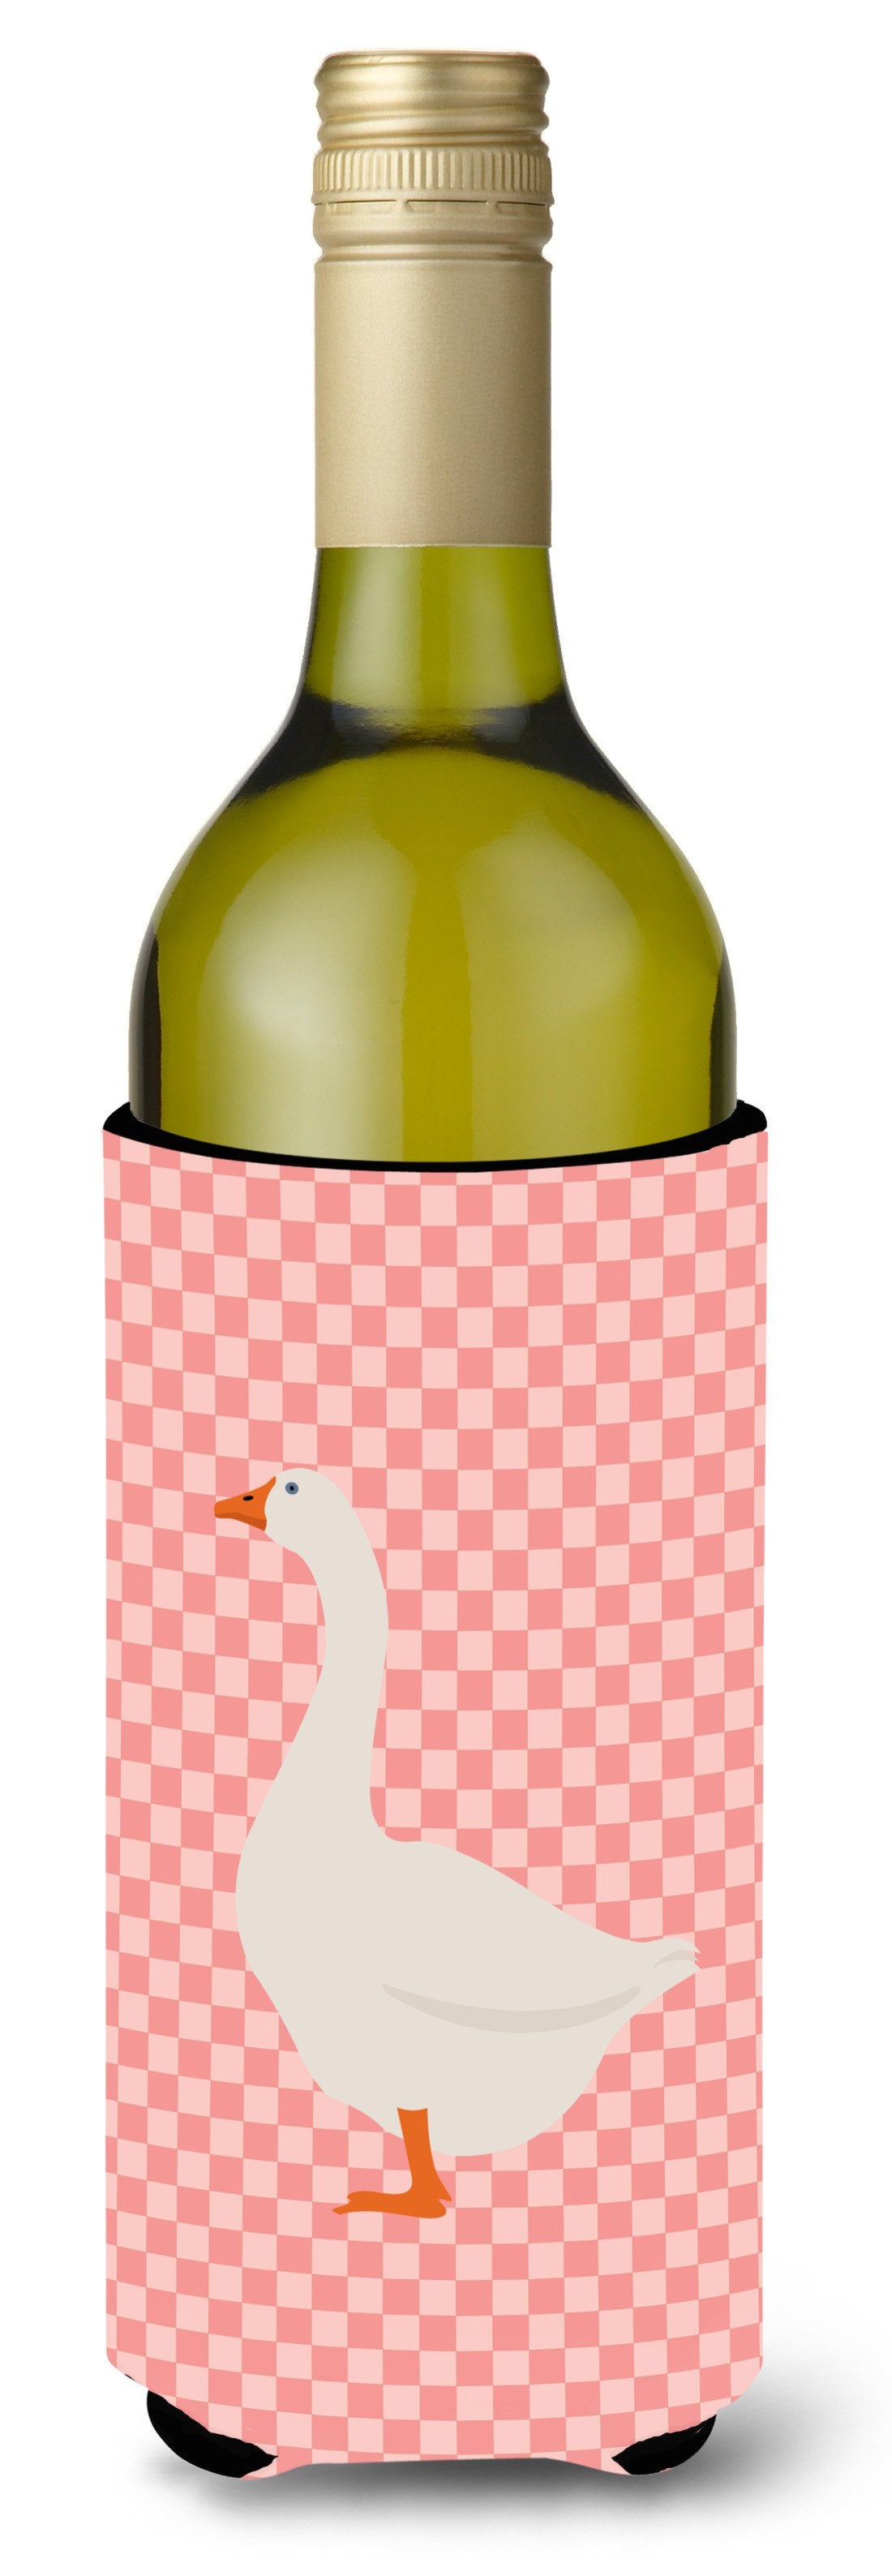 Embden Goose Pink Check Wine Bottle Beverge Insulator Hugger BB7892LITERK by Caroline's Treasures